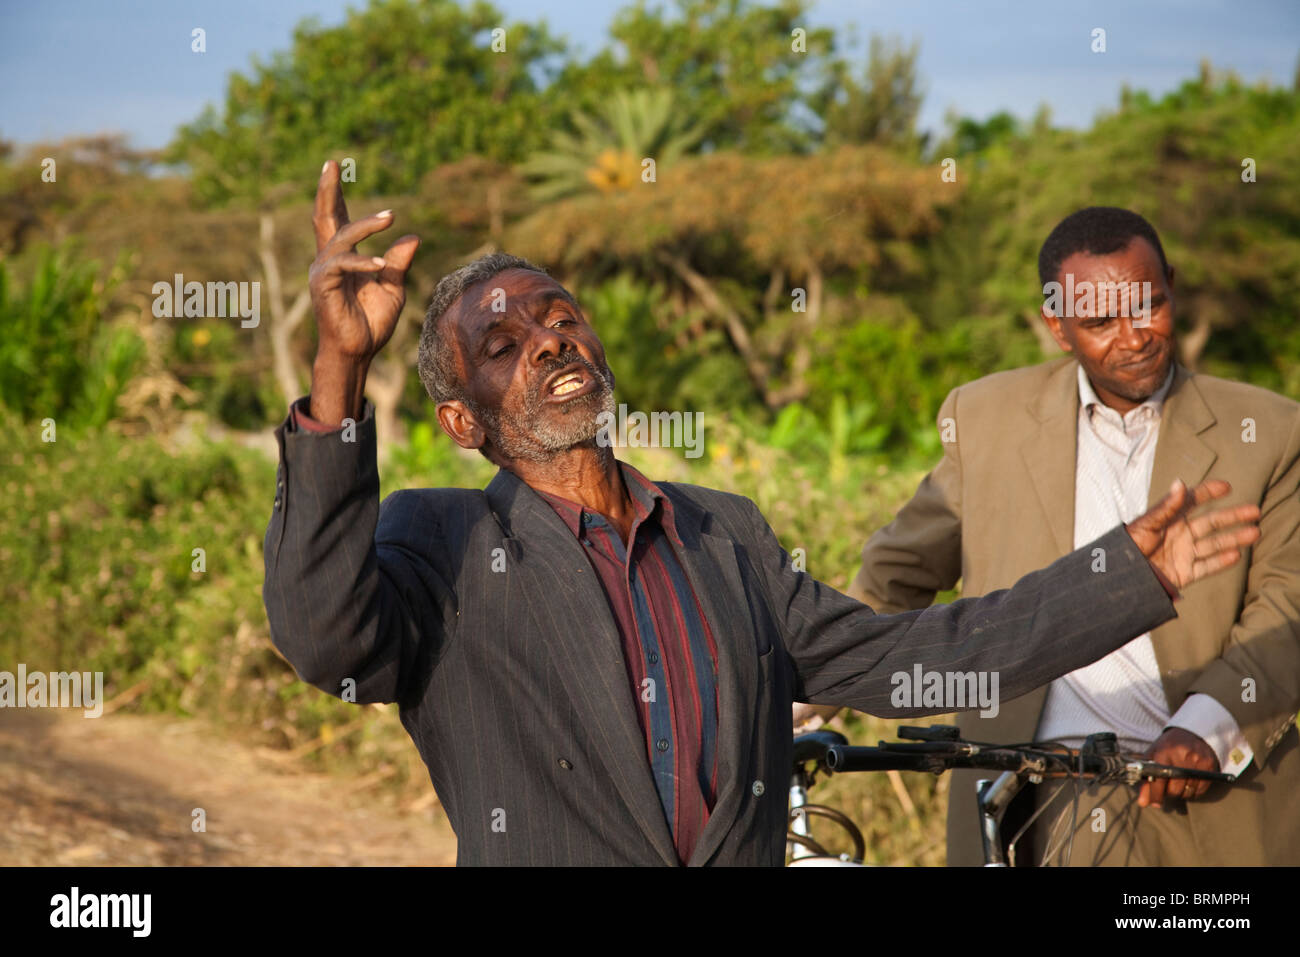 Ein freundlicher älterer Mann liefert theatralisch seinen Punkt während eines Gesprächs am Ufer des Sees Awassa am Abend Stockfoto